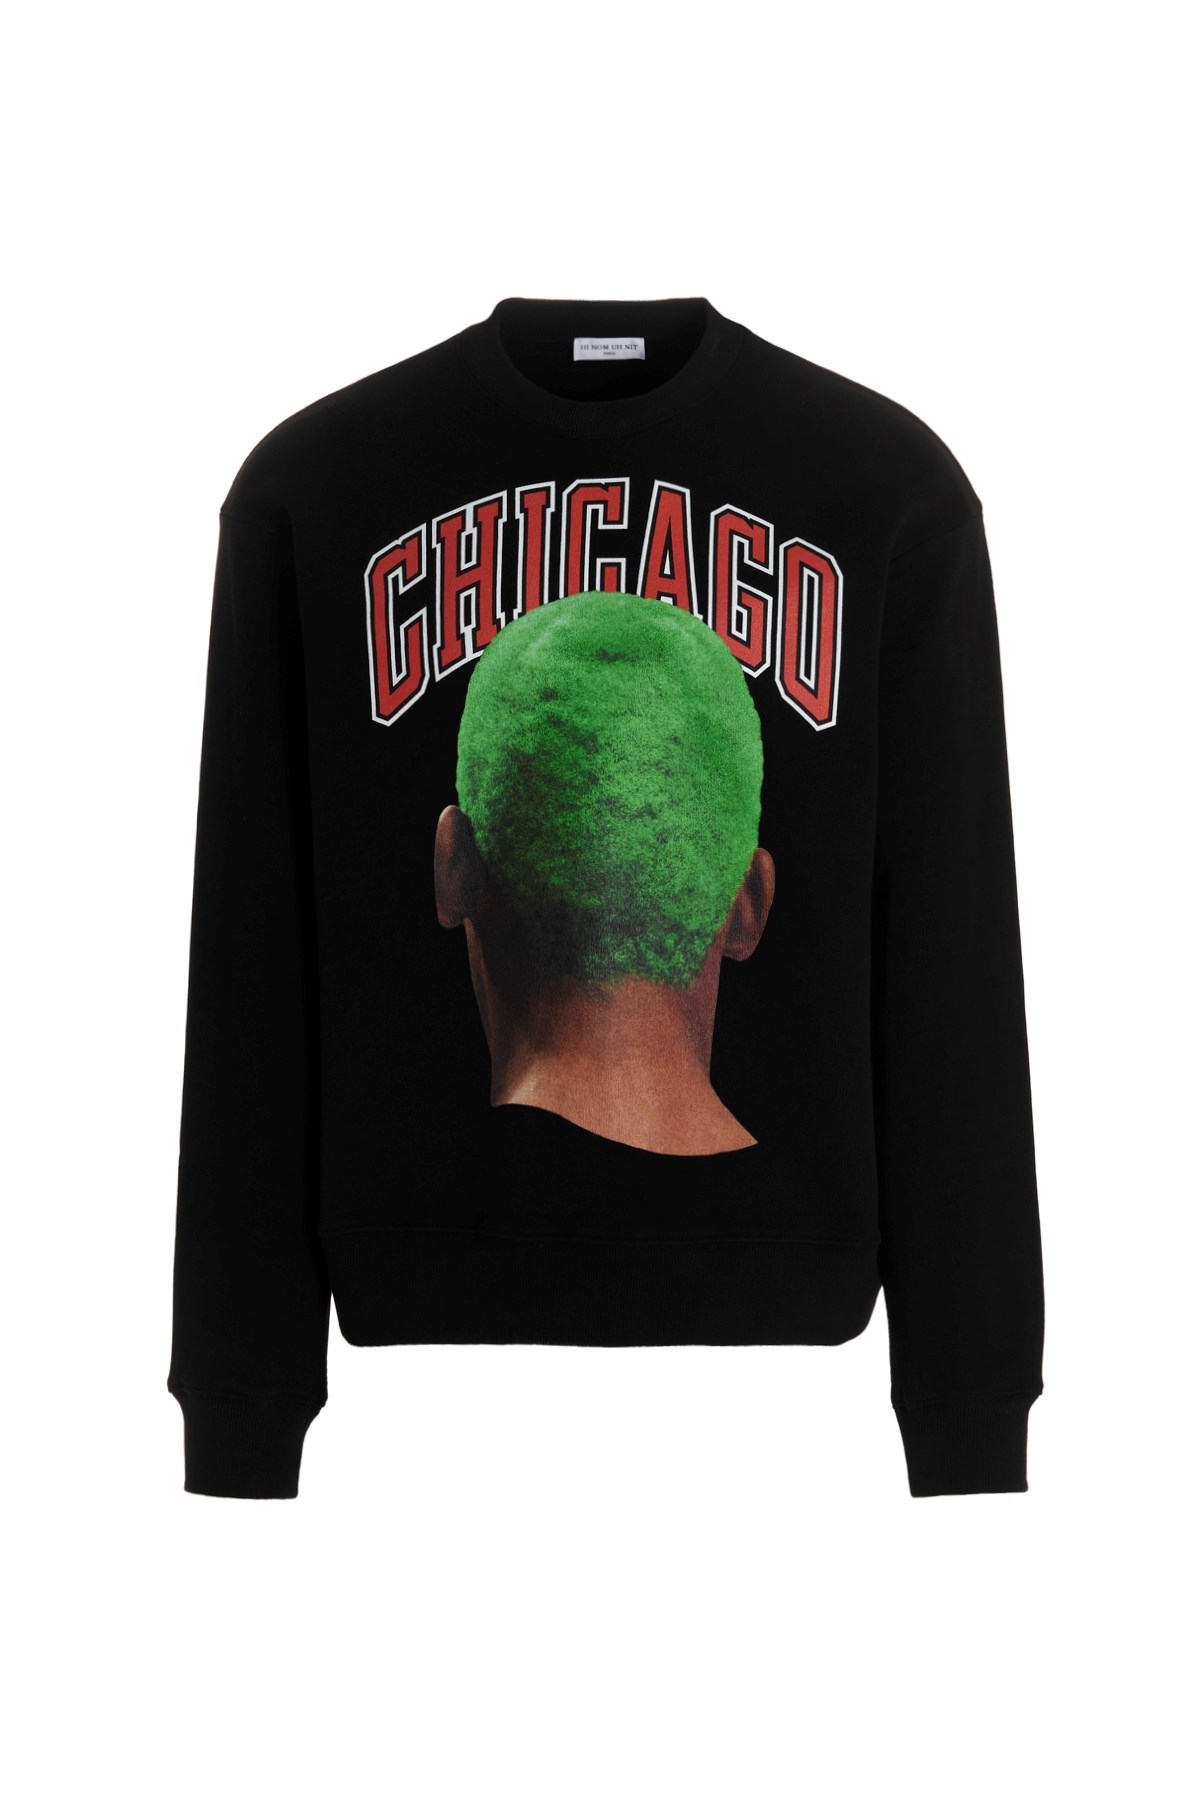 IH NOM UH NIT Sweatshirt 'Chicago Player Green'